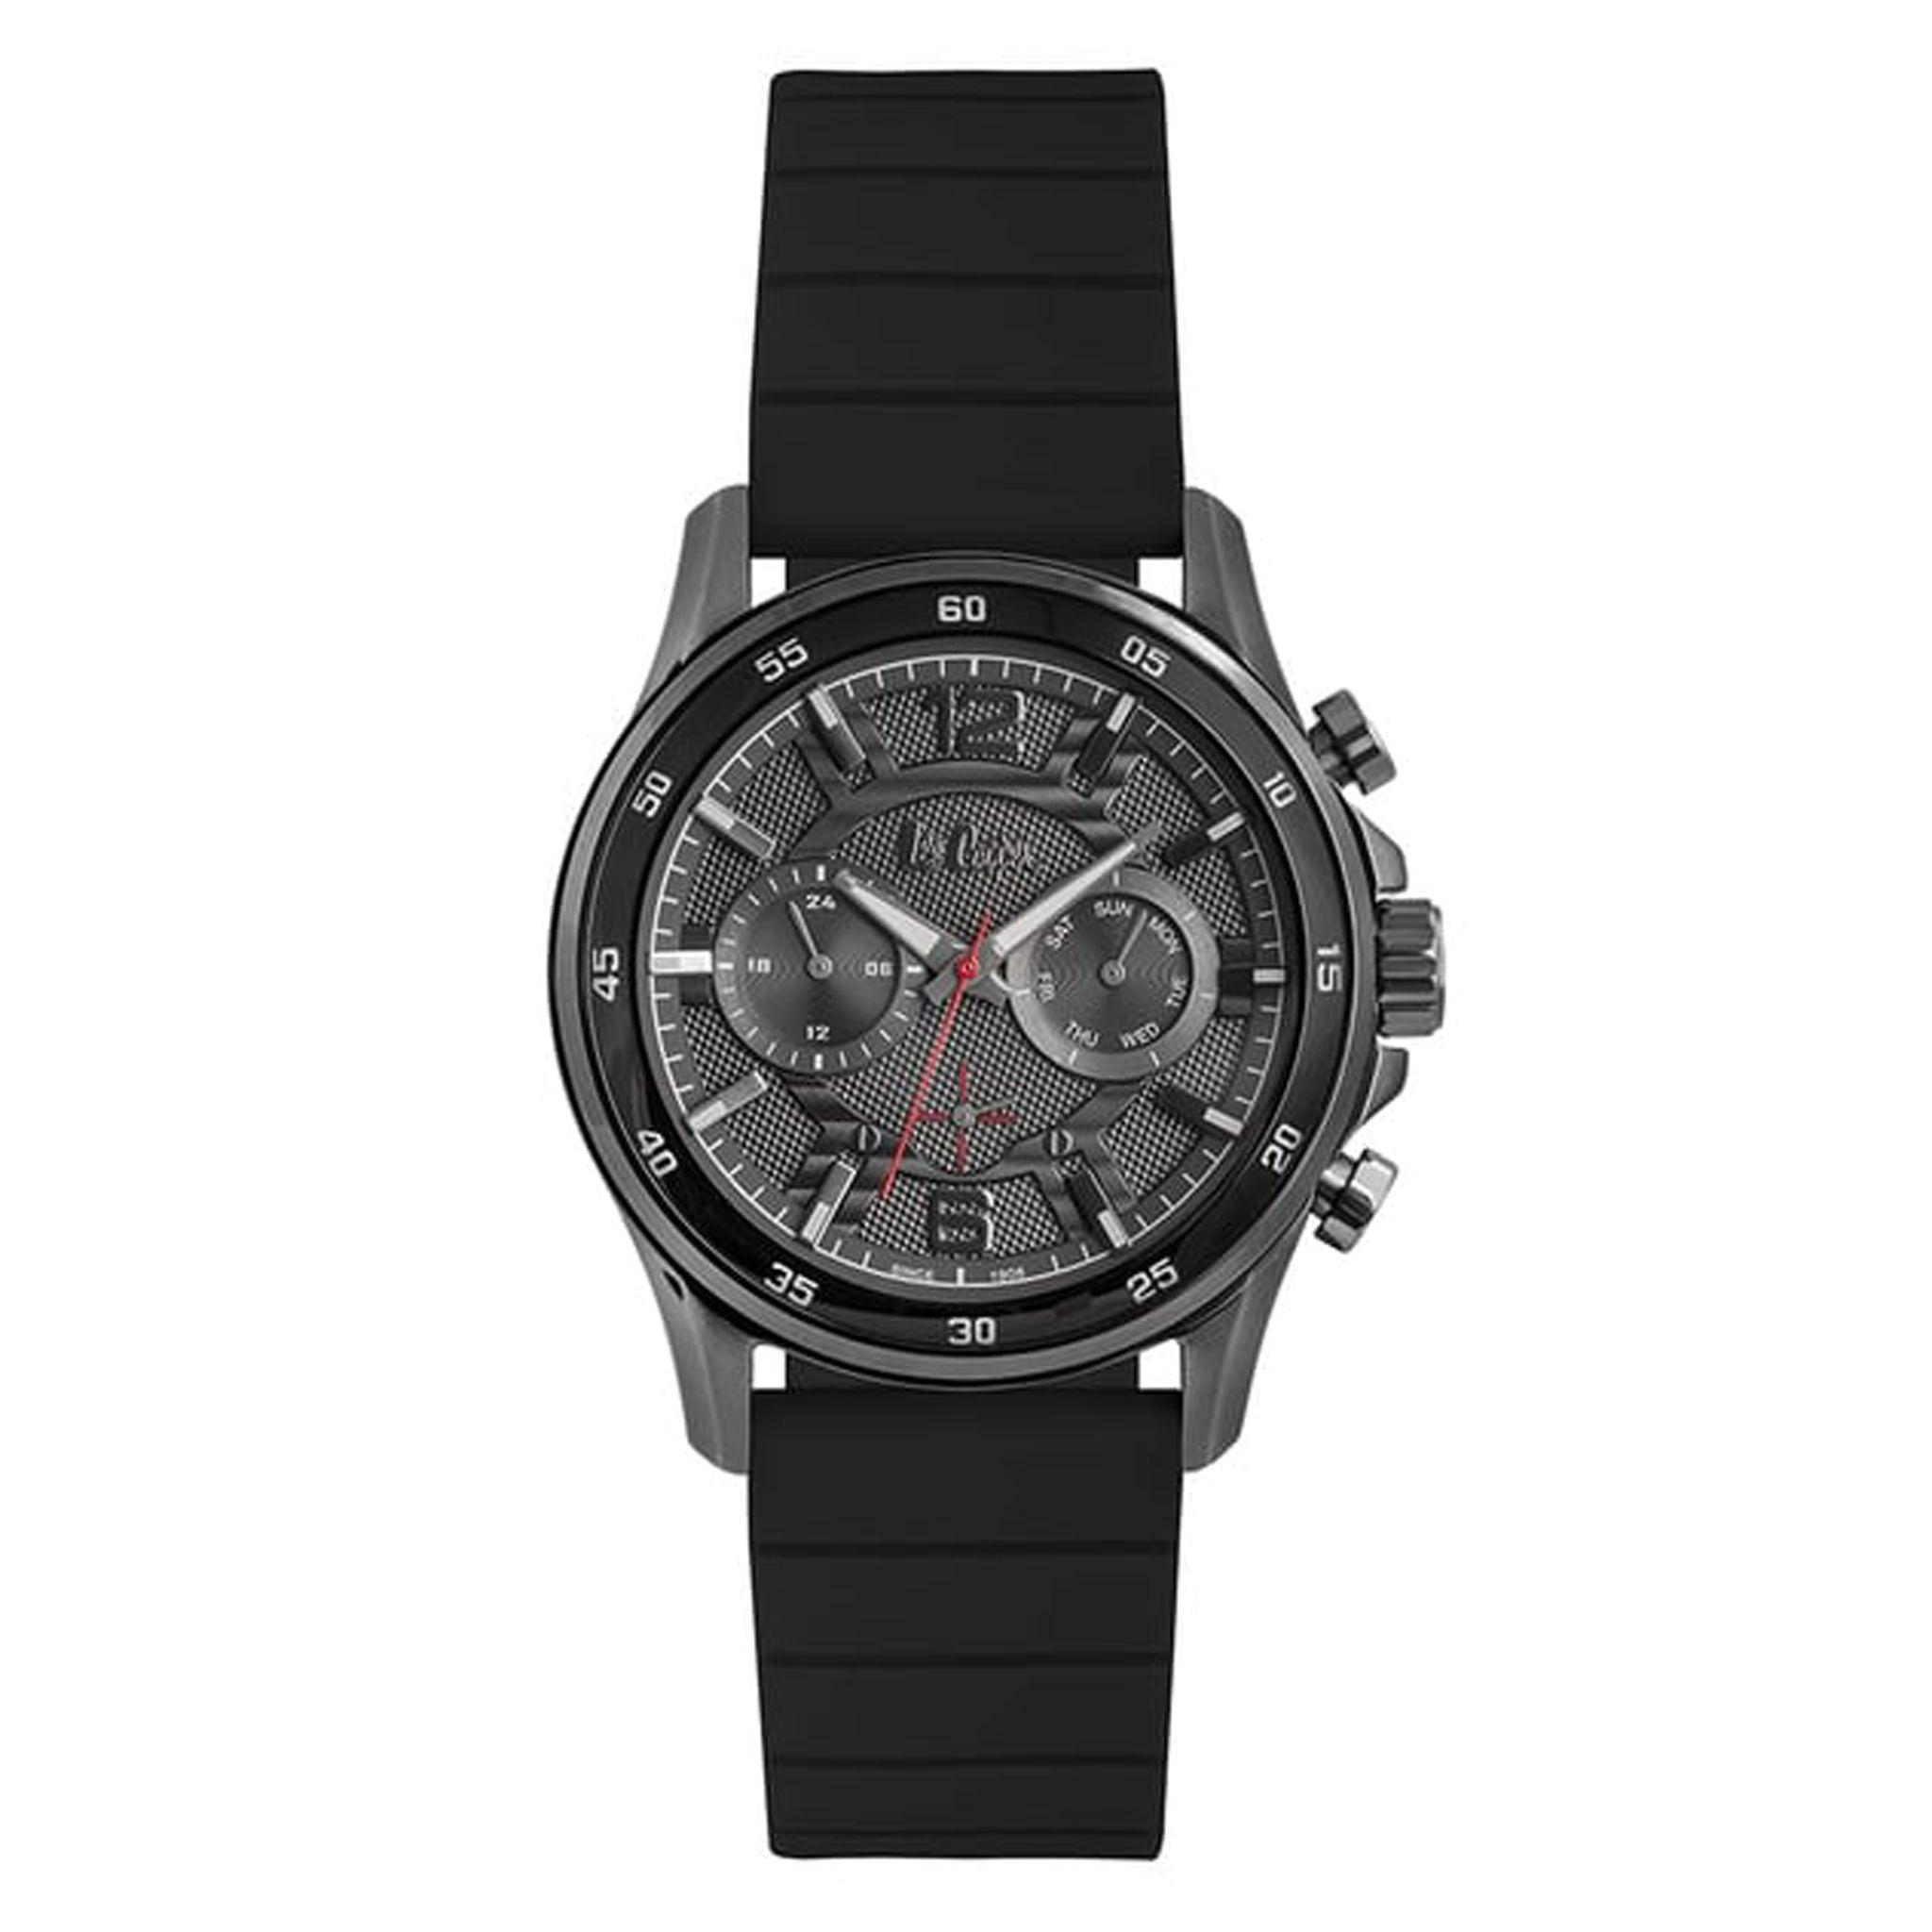 ساعة يد رجالية متعددة الوظائف - رمادي و مينا باللون دمادي - بحزام أسود من السيليكون لي كوبر Lee Cooper Men's Multi Function Watch